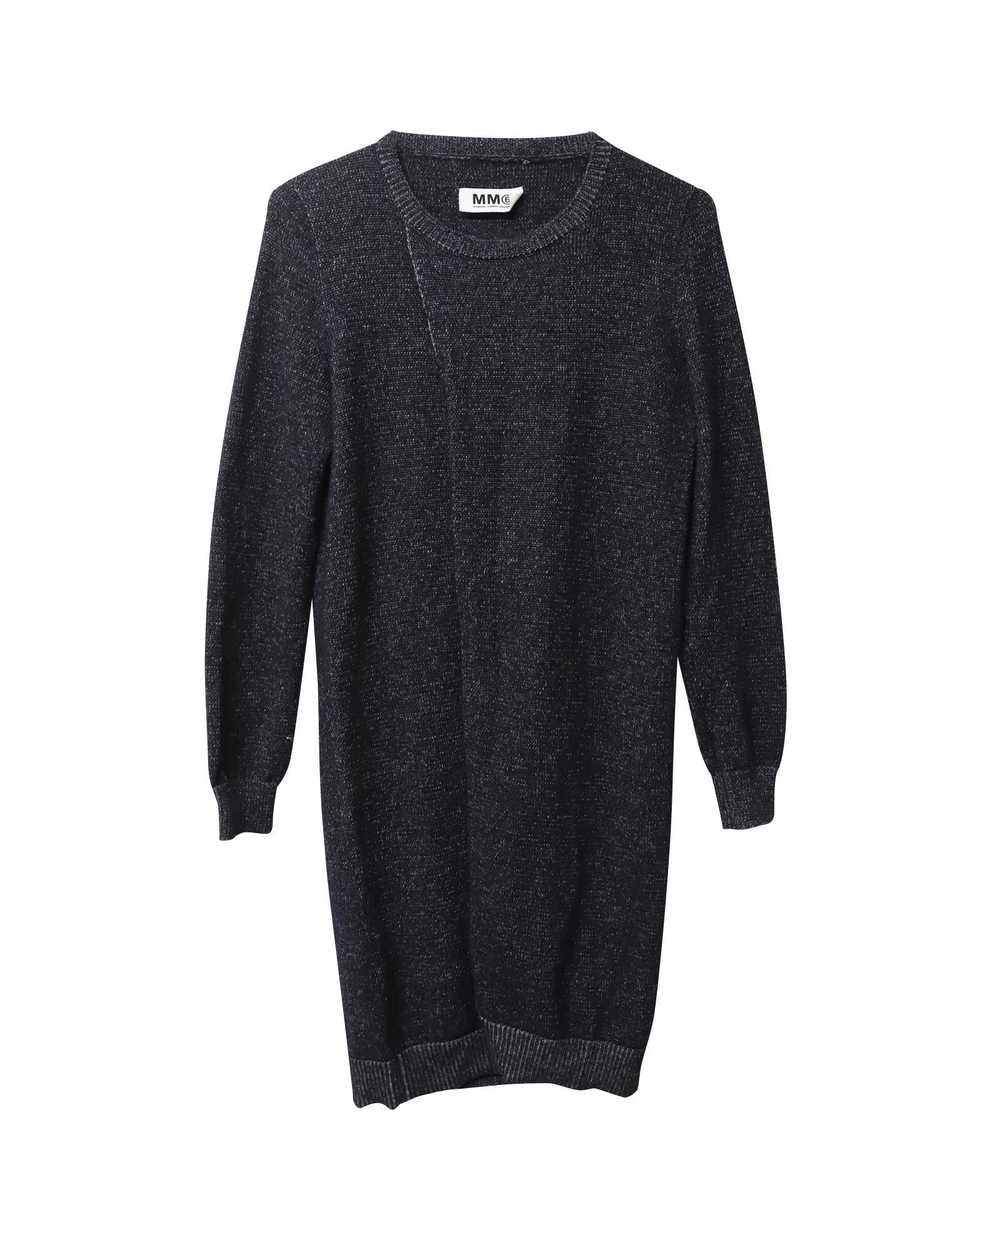 Maison Margiela Soft Knit Black Sweater Dress - image 4